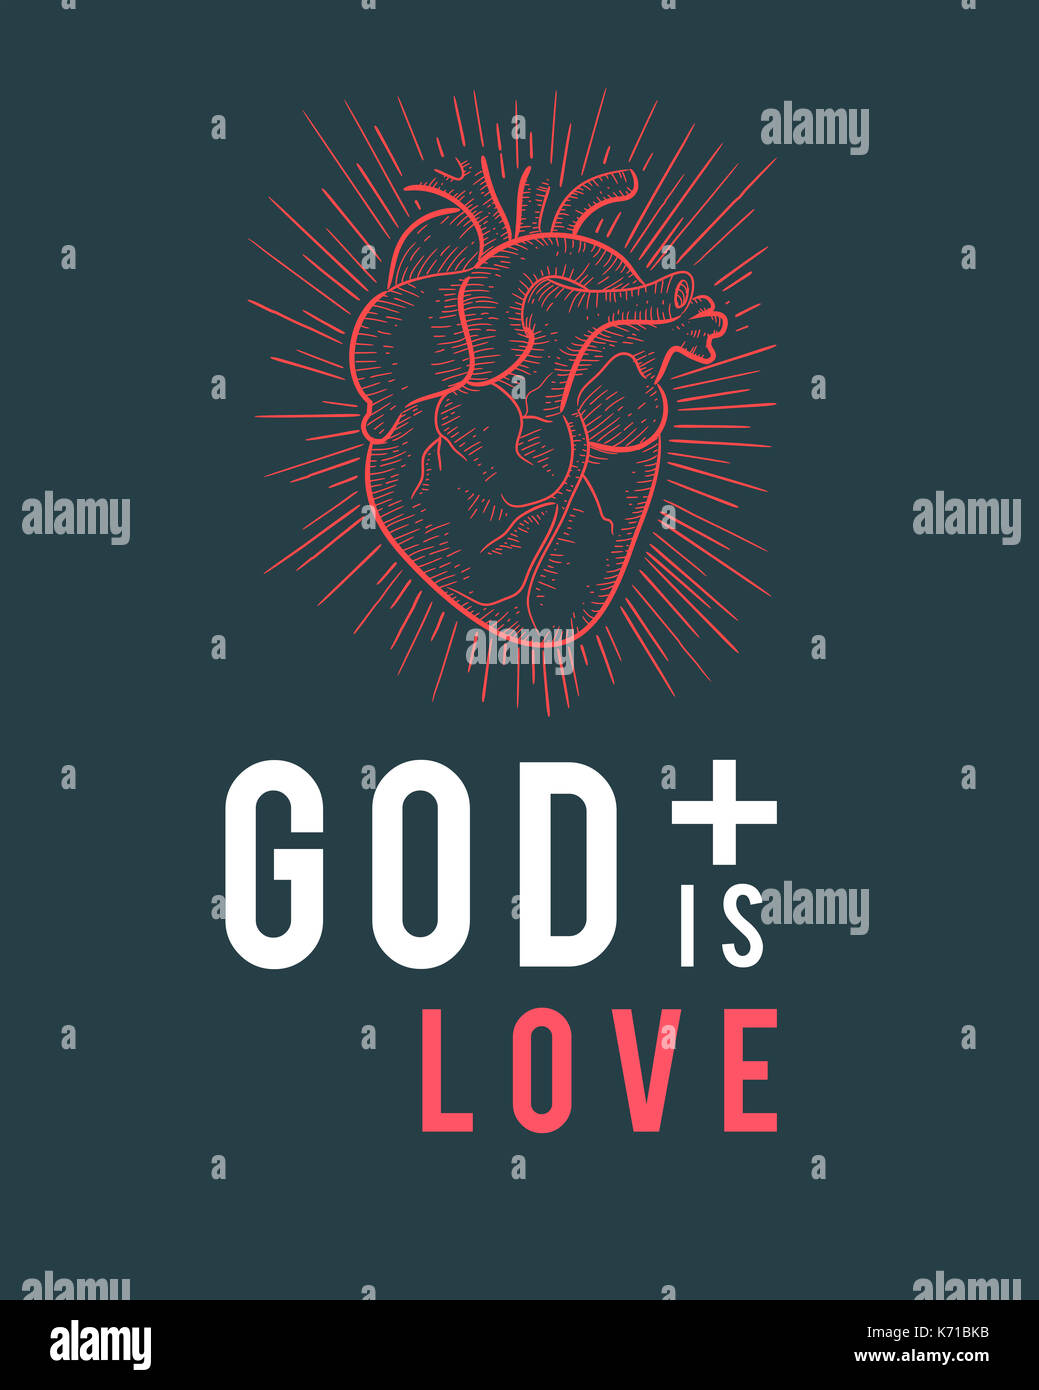 L'illustration ou le dessin de l'expression : Dieu est amour, et des droits de l'red heart Banque D'Images